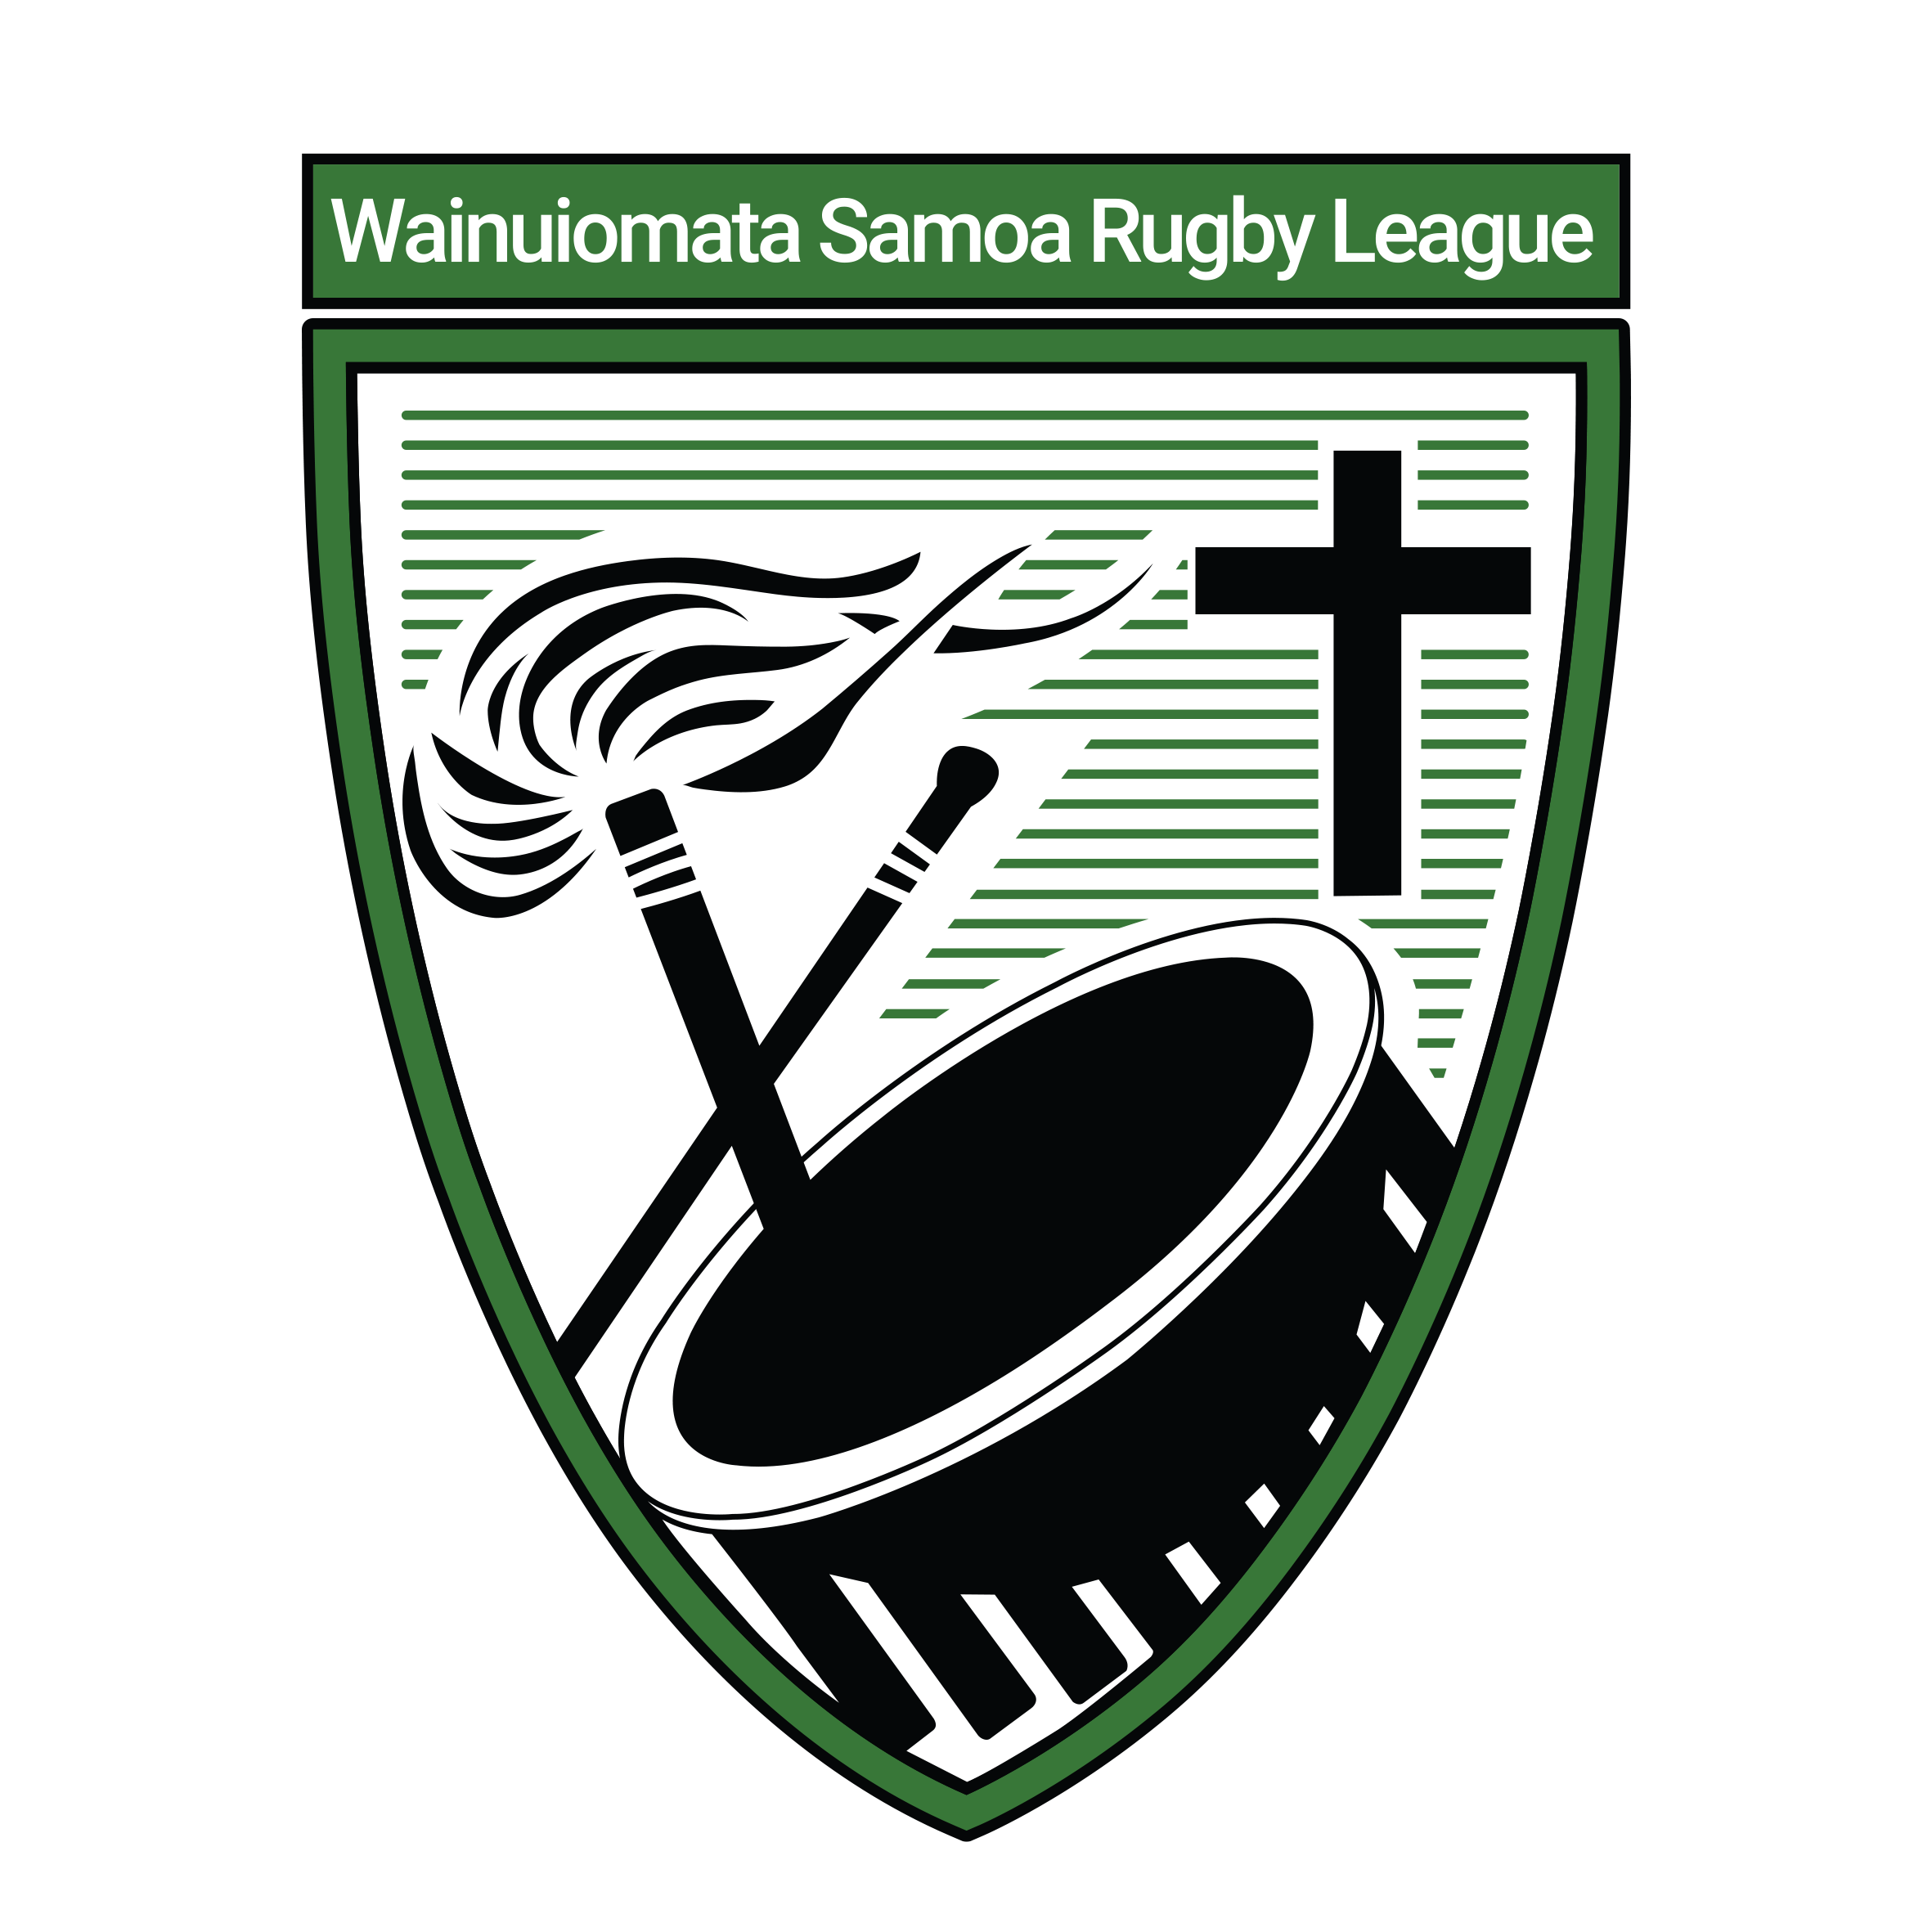 Wainuiomata Samoa Rugby League